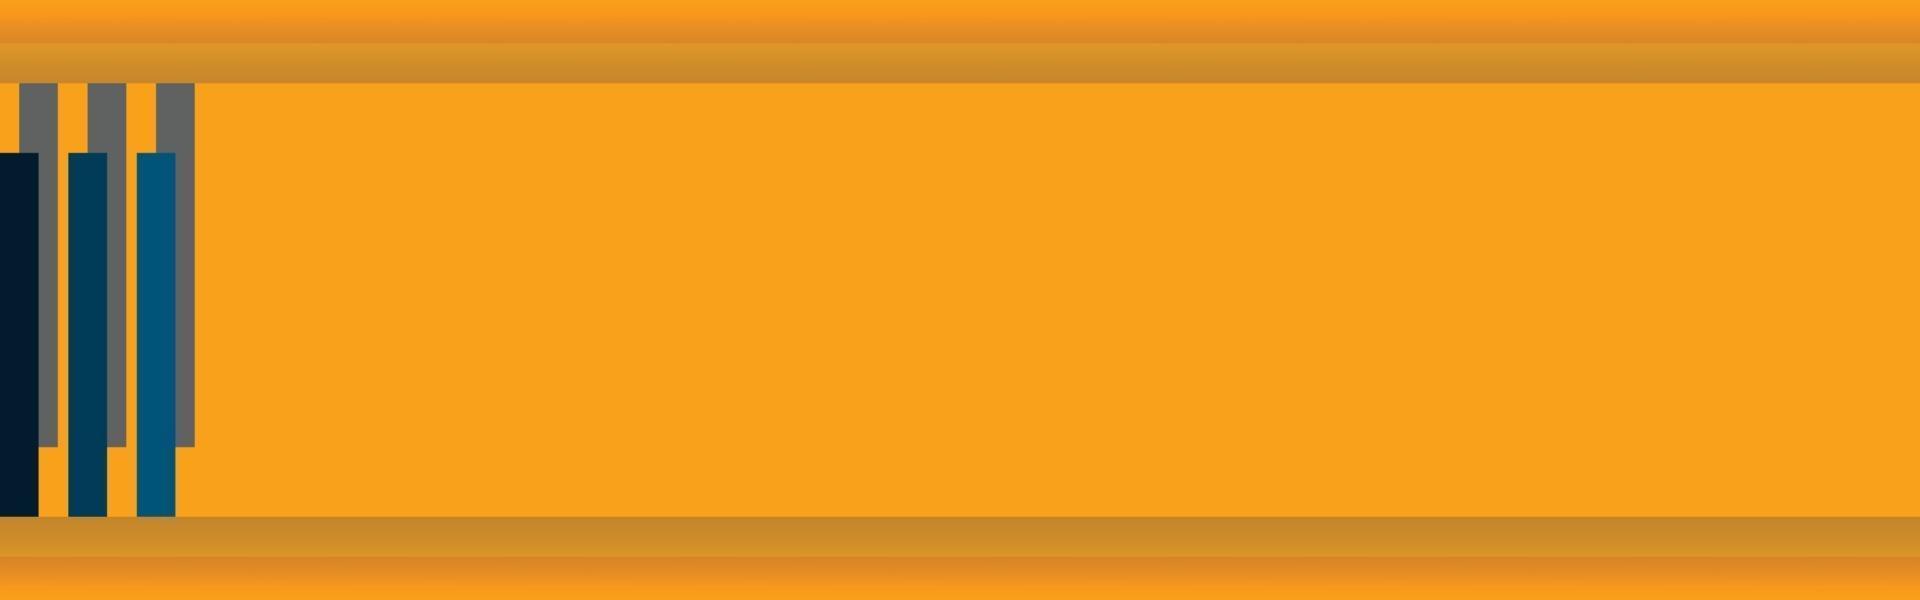 espaço em branco web banner laranja amarelo e cores marinho vetor